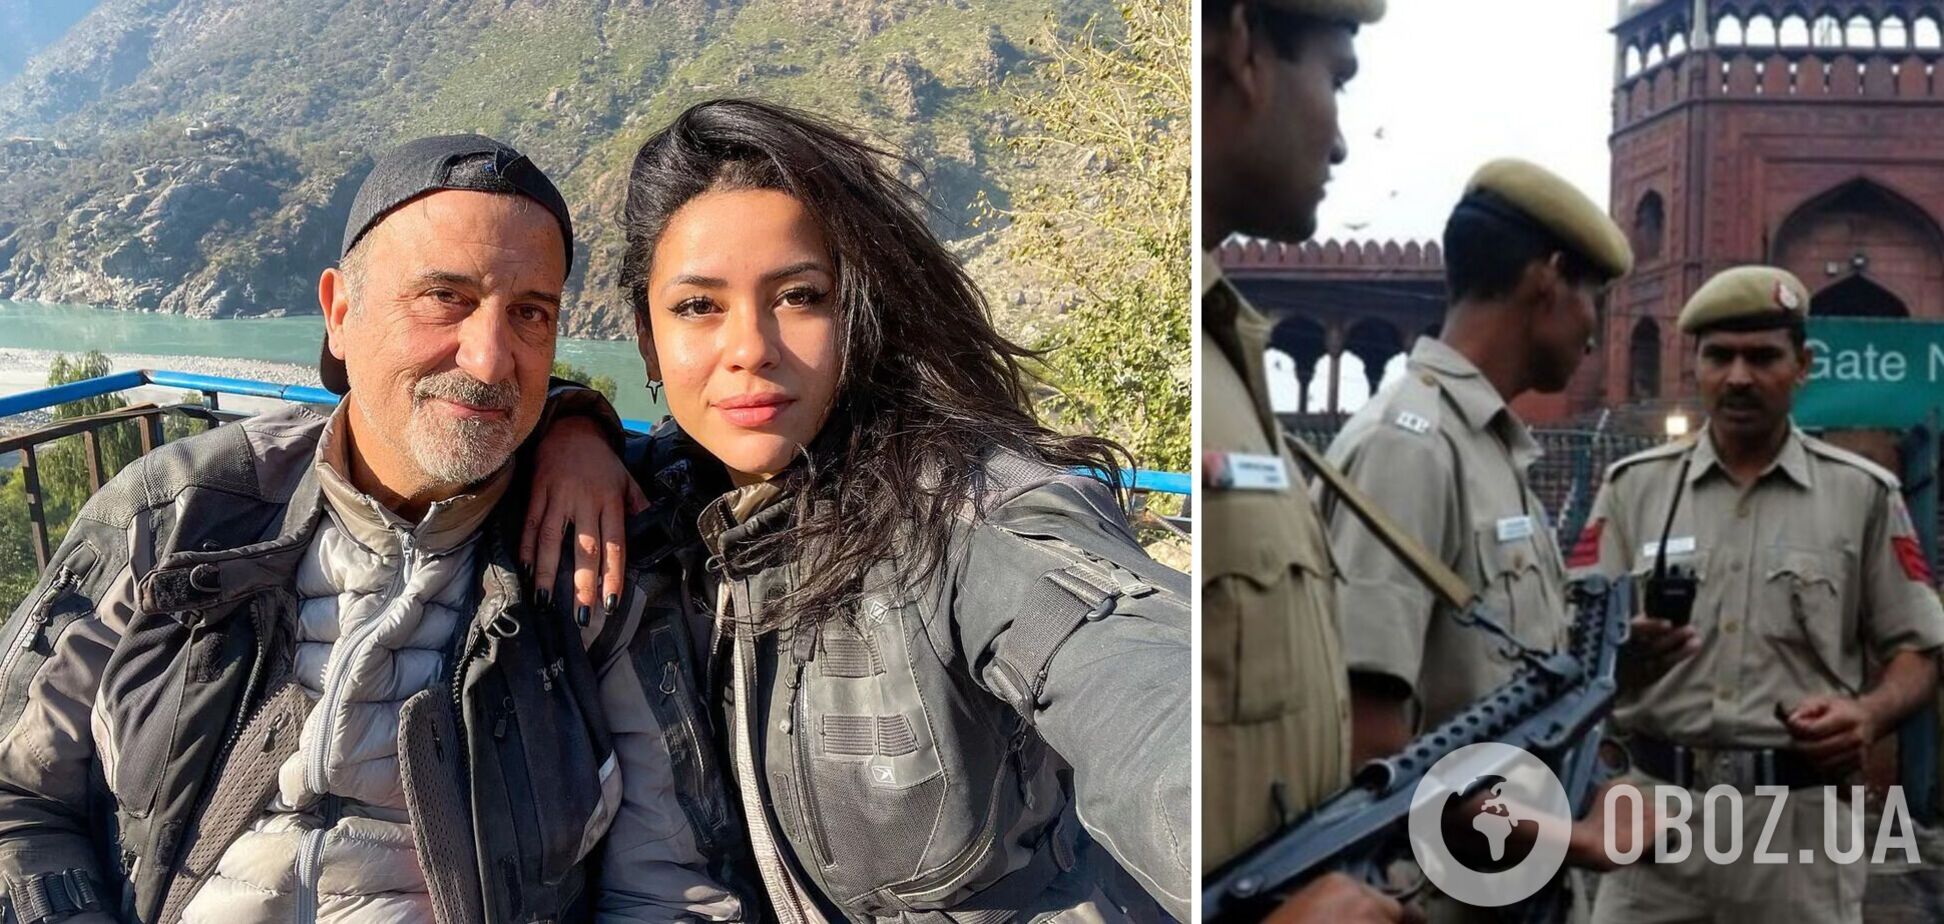 В Индии известную тревел-блогершу изнасиловали семь человек, а ее мужа избили: подробности трагедии